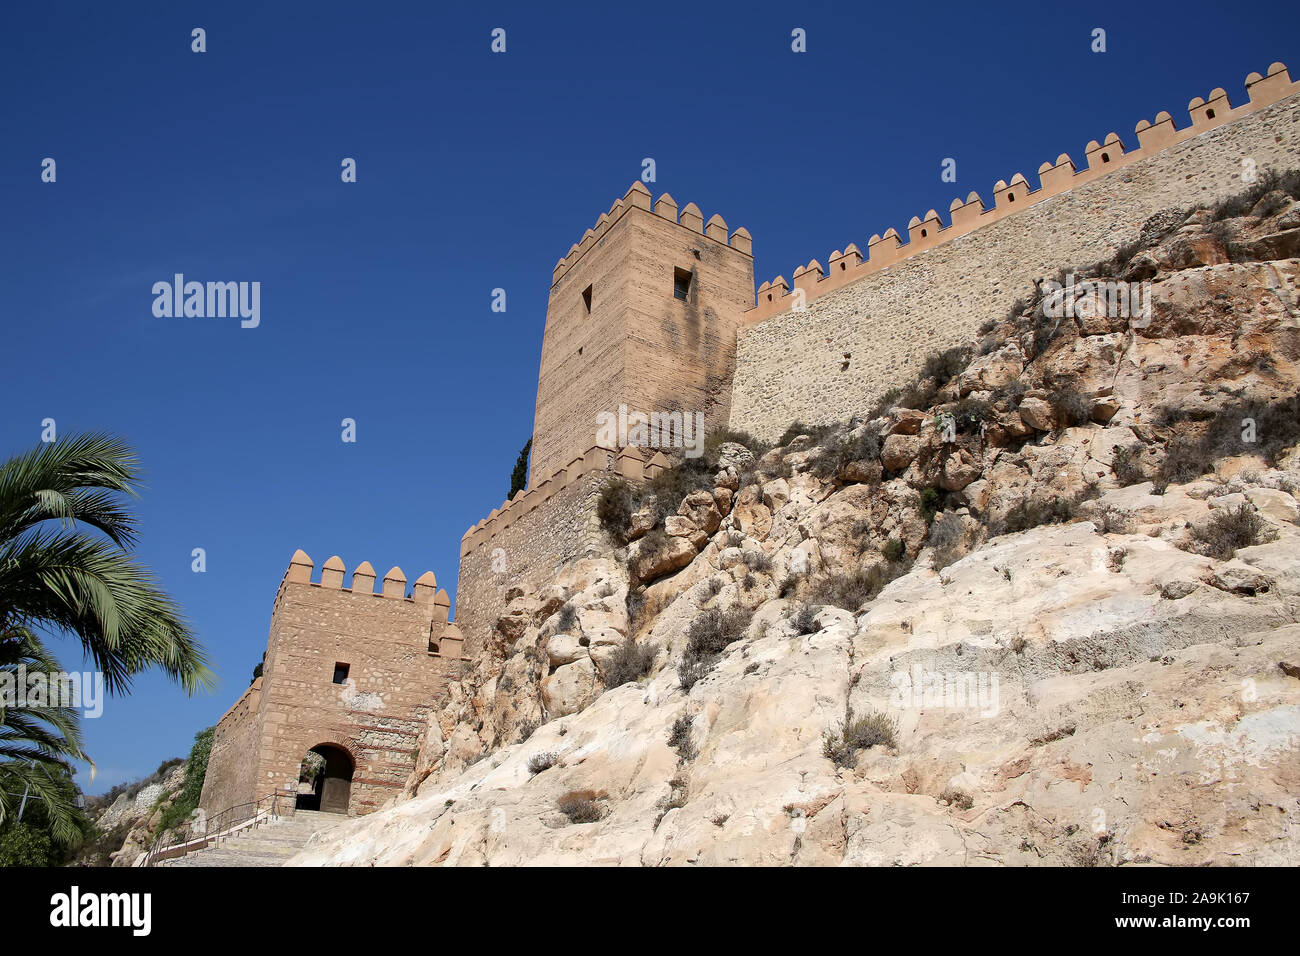 Entrée du château Alcazaba, regardant les murs fortifiés et de passerelle, Almeria Espagne Banque D'Images